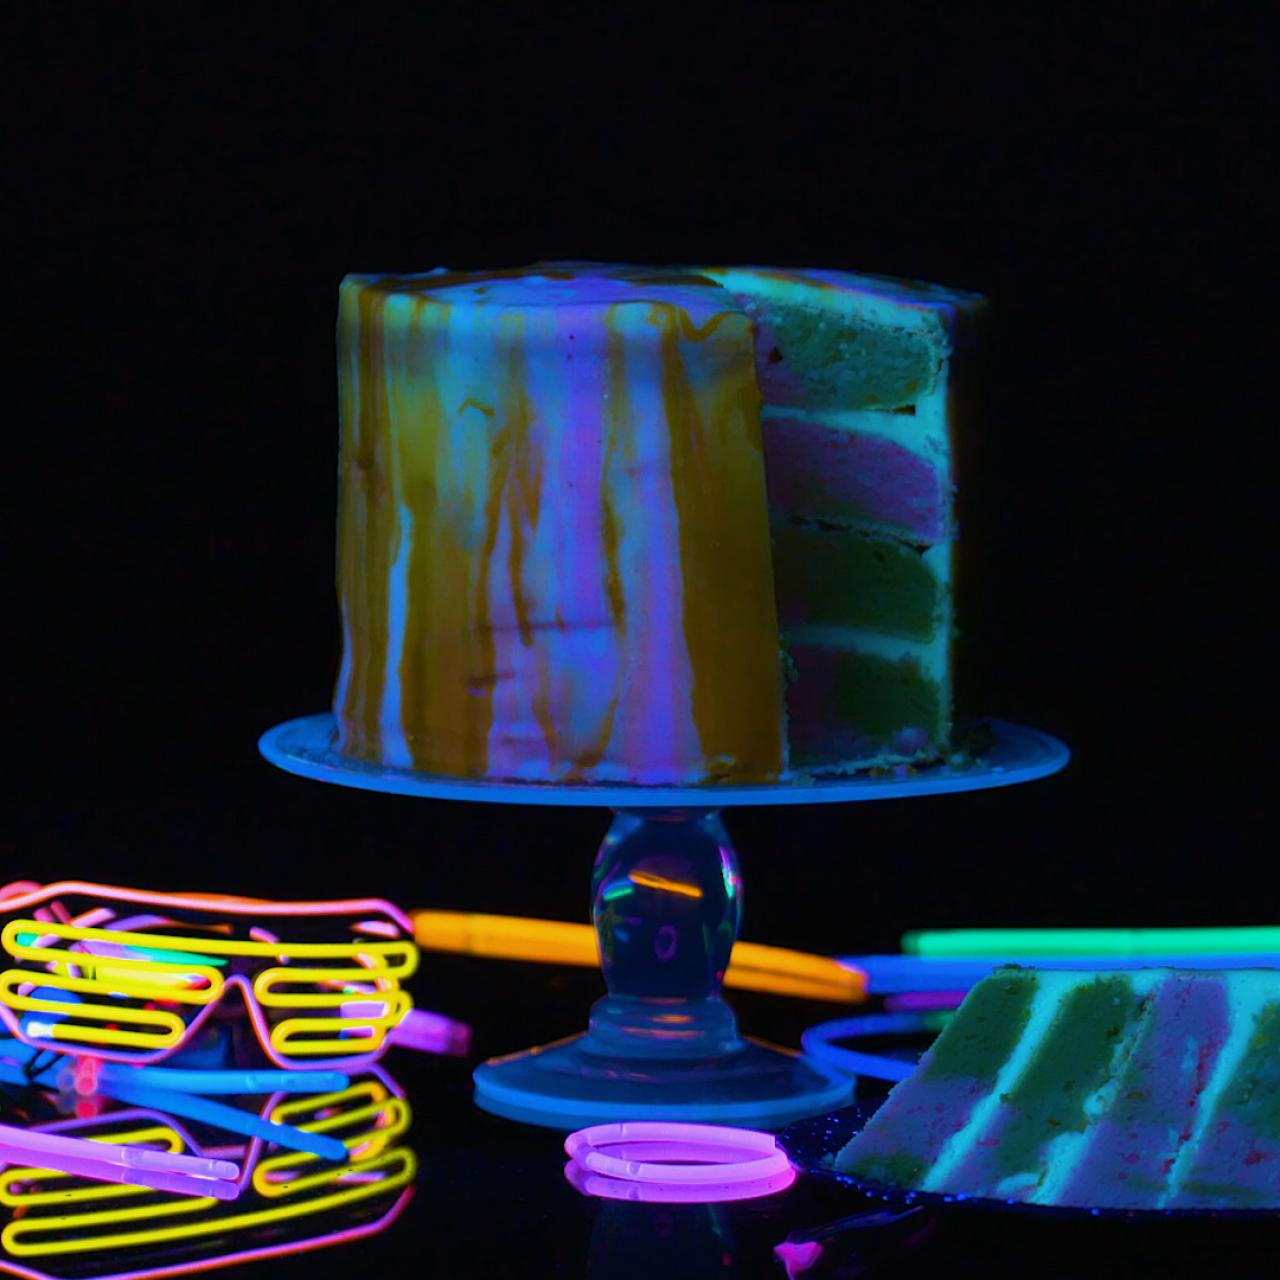 glow party birthday cake